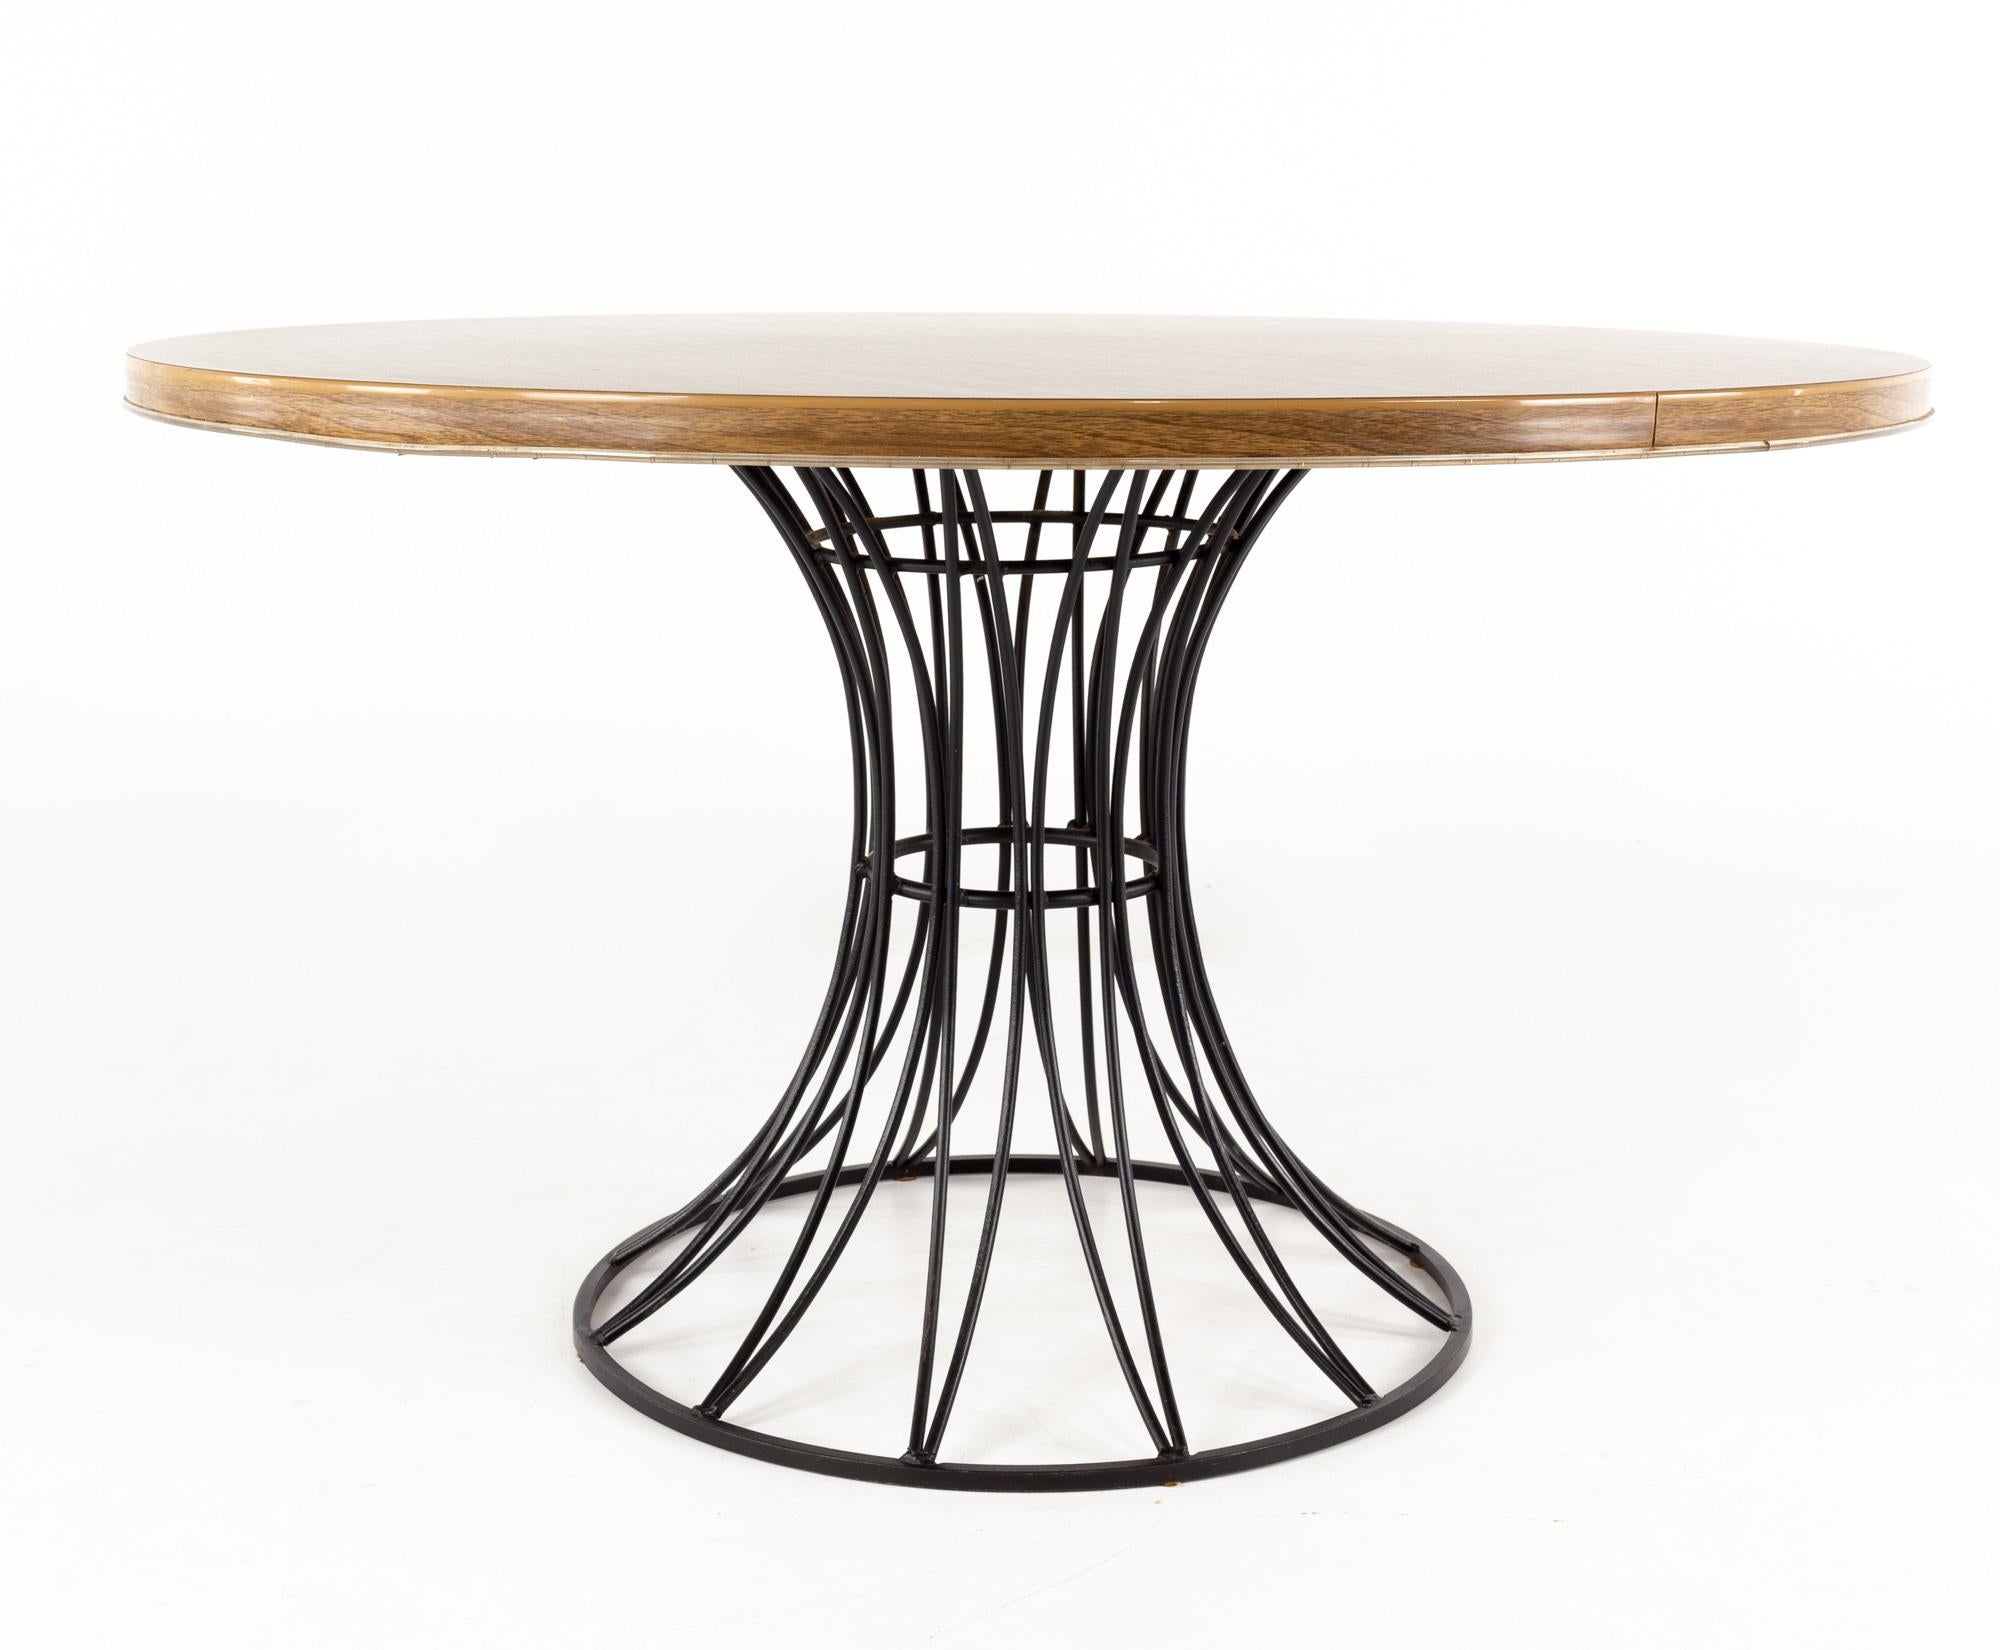 Richard McCarthy für Selrite Style Formica & Eisen Esstisch Mitte des Jahrhunderts

Tisch Maße: 48 breit x 48 tief x 28 hoch

Alle Möbelstücke sind in einem so genannten restaurierten Vintage-Zustand zu haben. Das bedeutet, dass das Stück beim Kauf